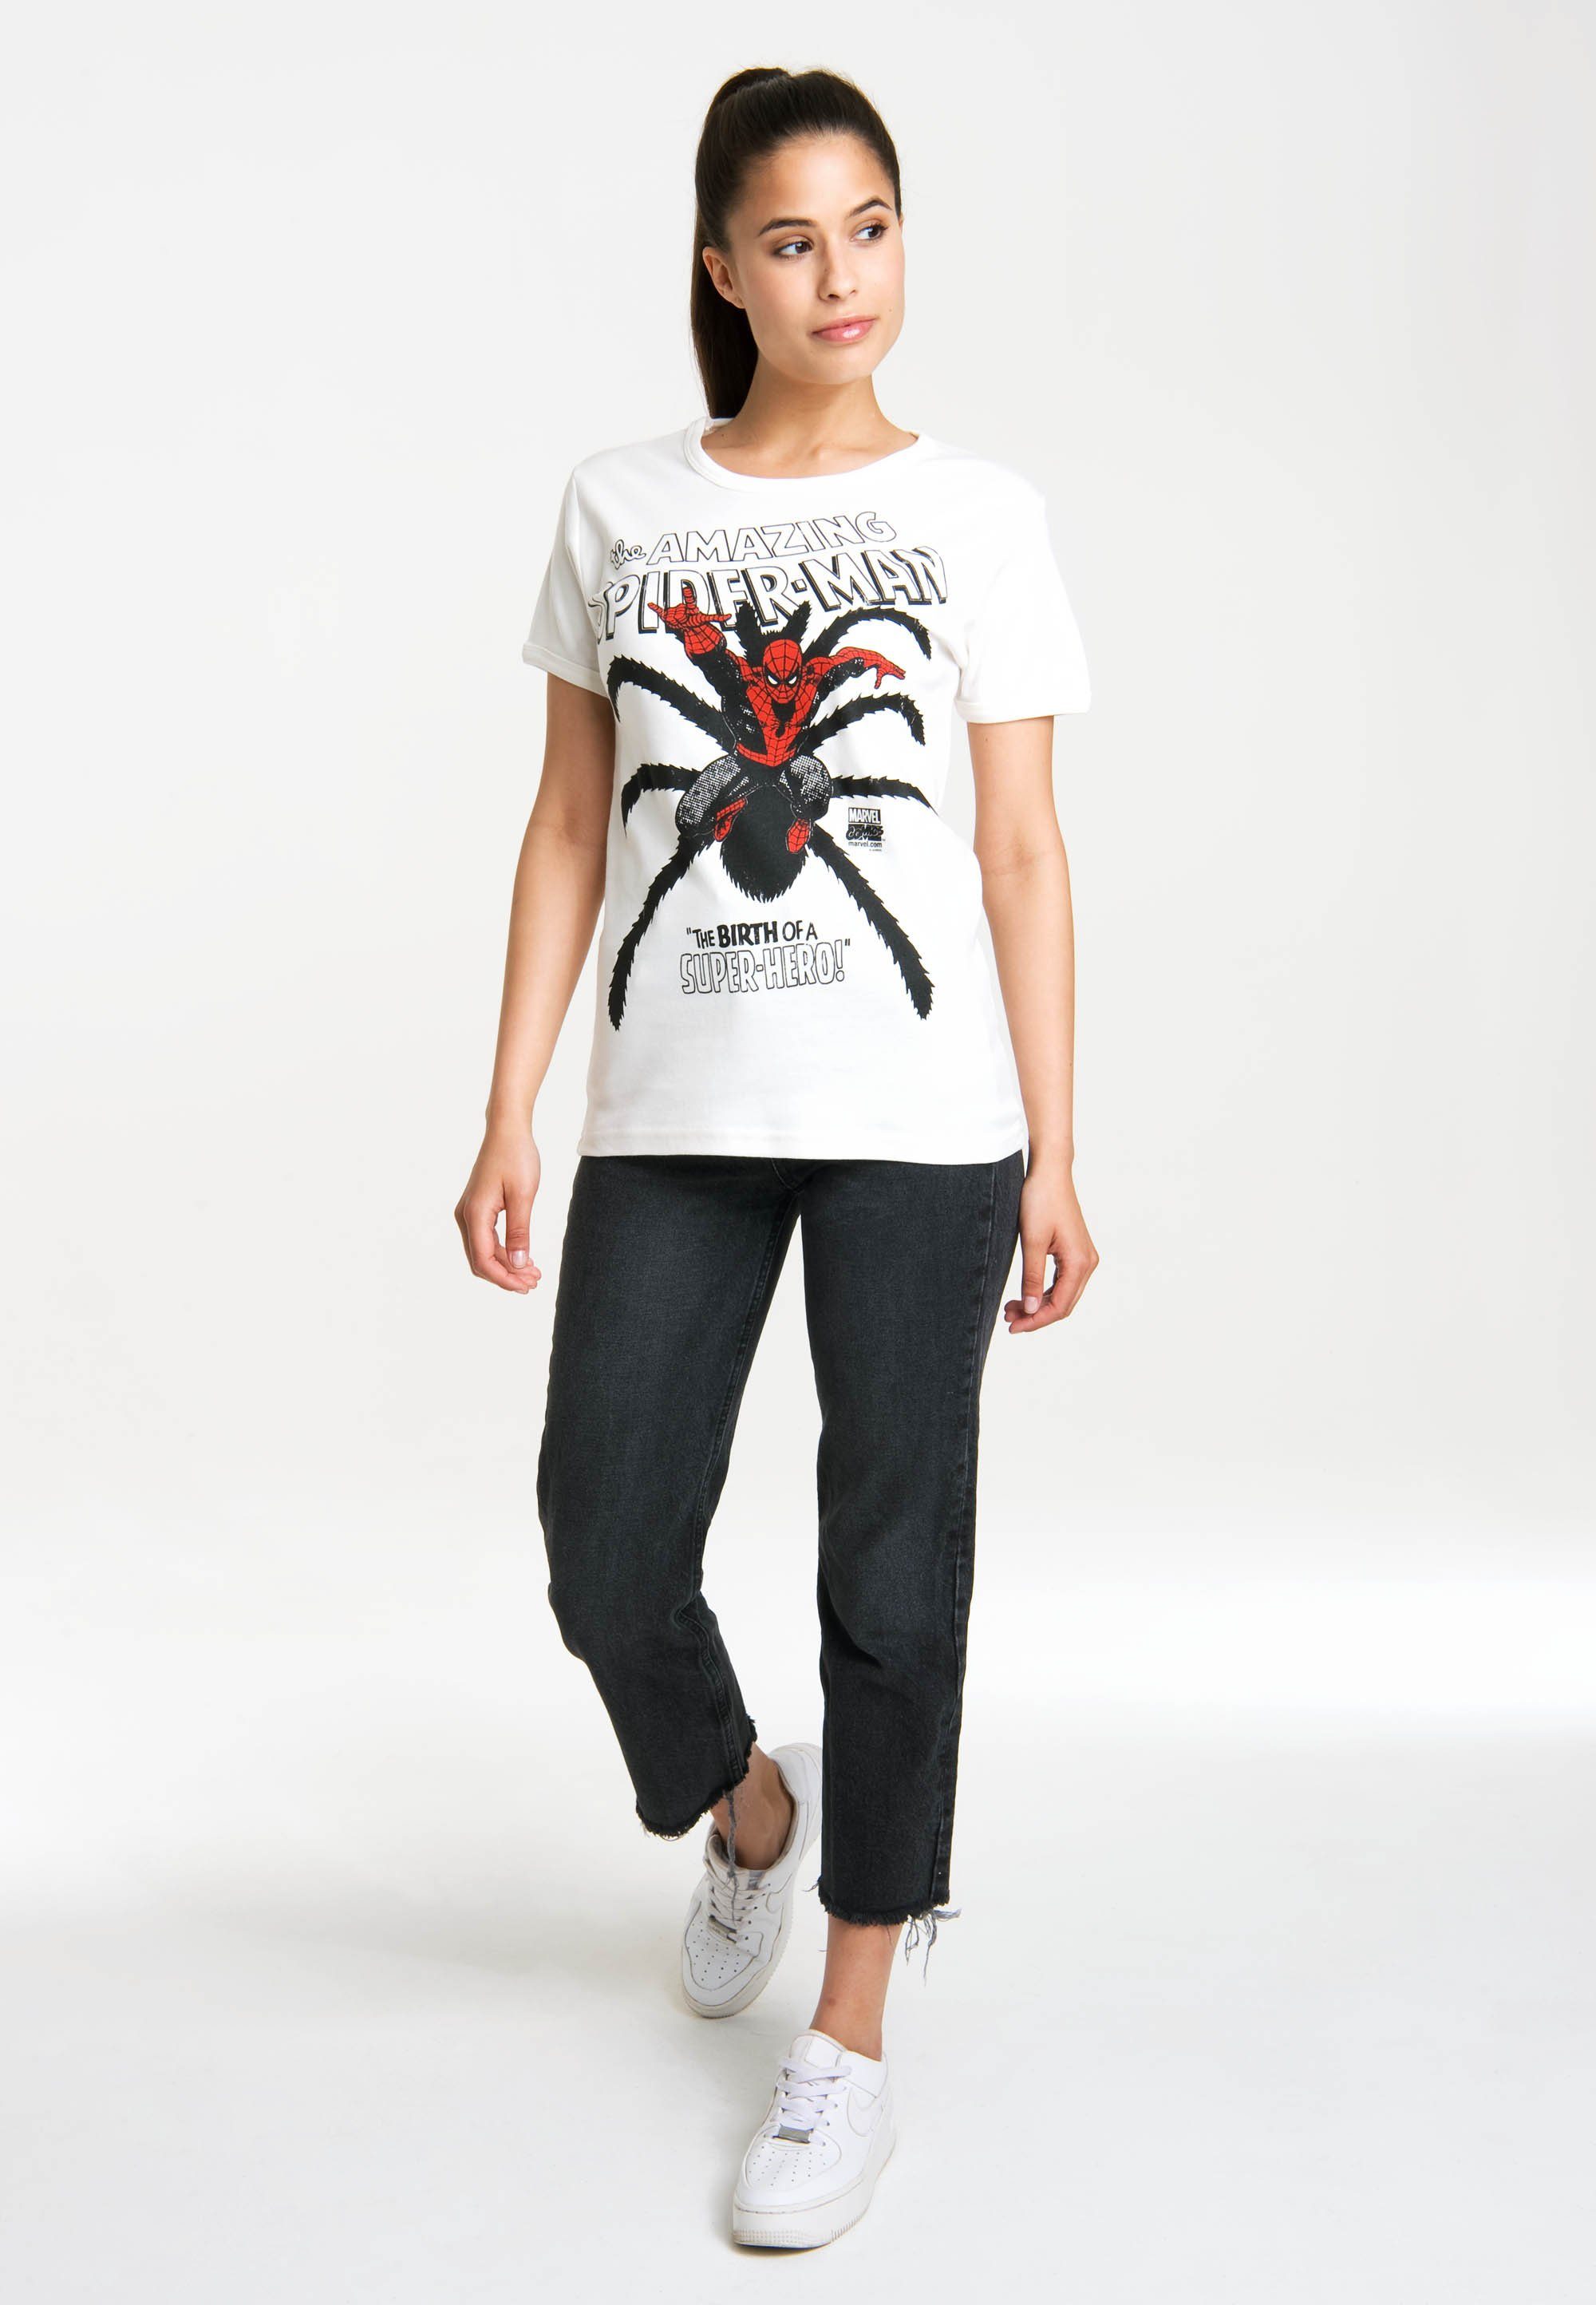 LOGOSHIRT T-Shirt Spider-Man Birth mit Originaldesign lizenzierten